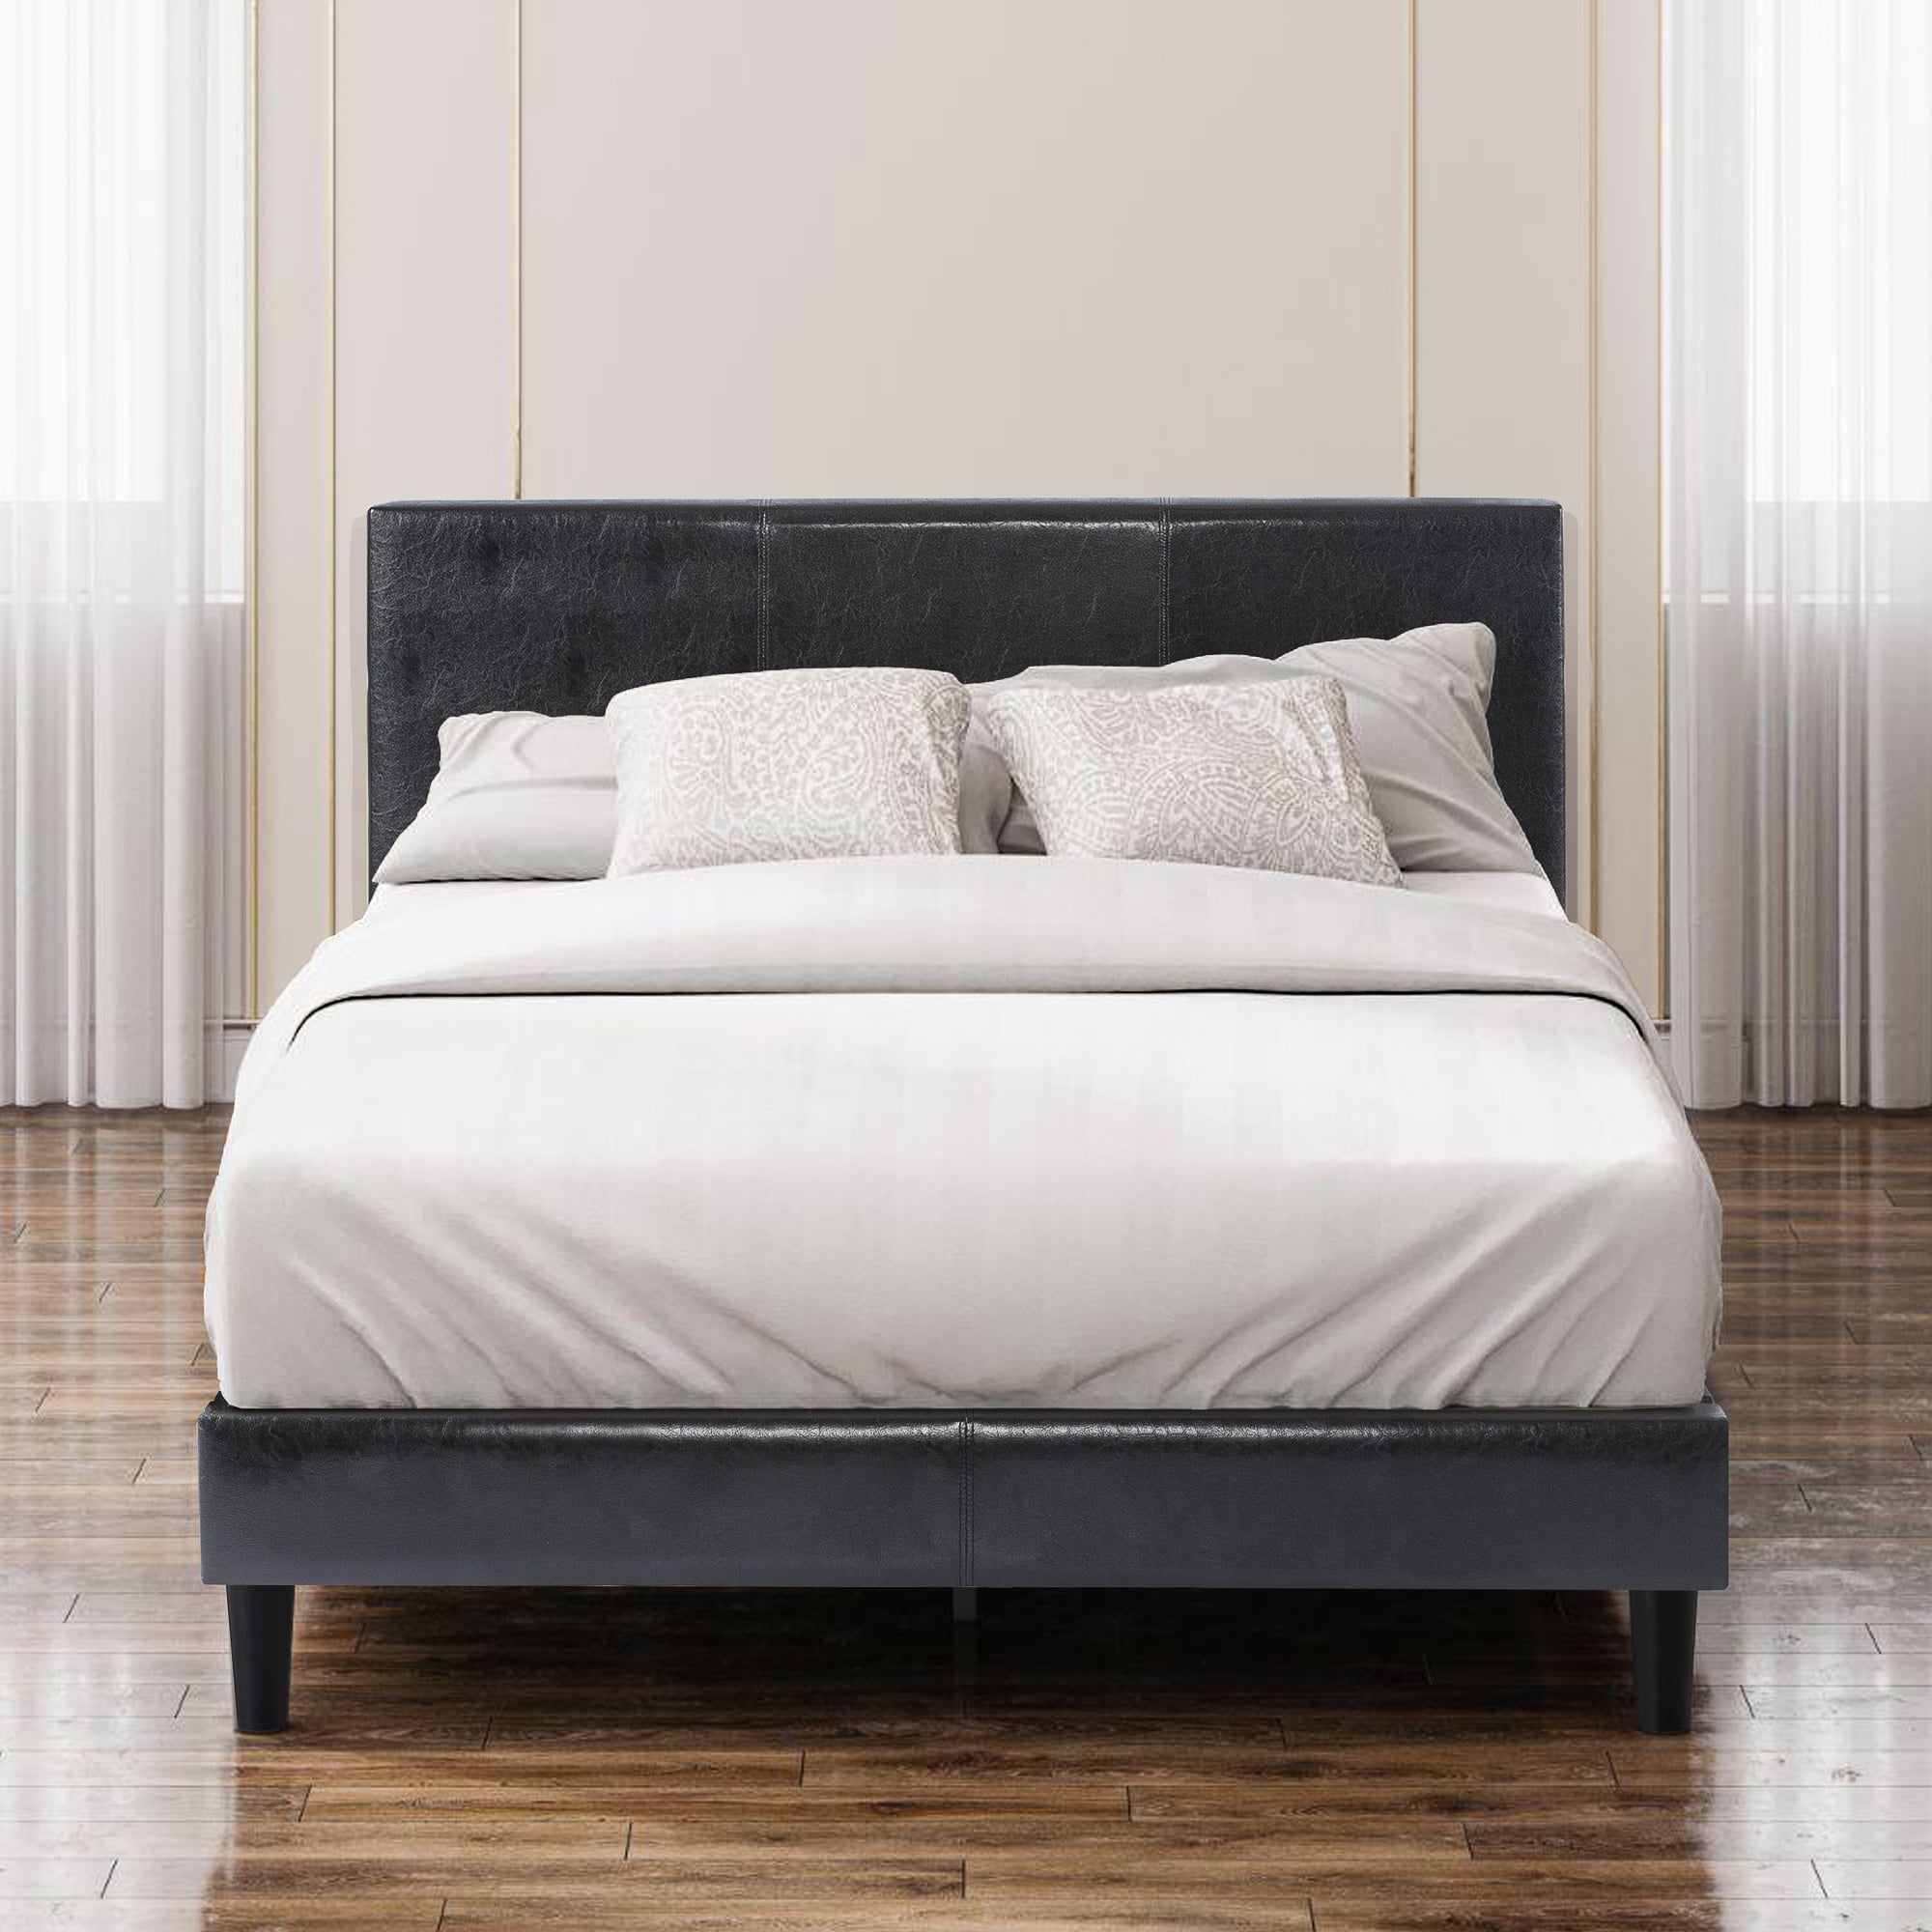 Jade Faux Leather Upholstered Platform Bed Frame with Short Headboard Black